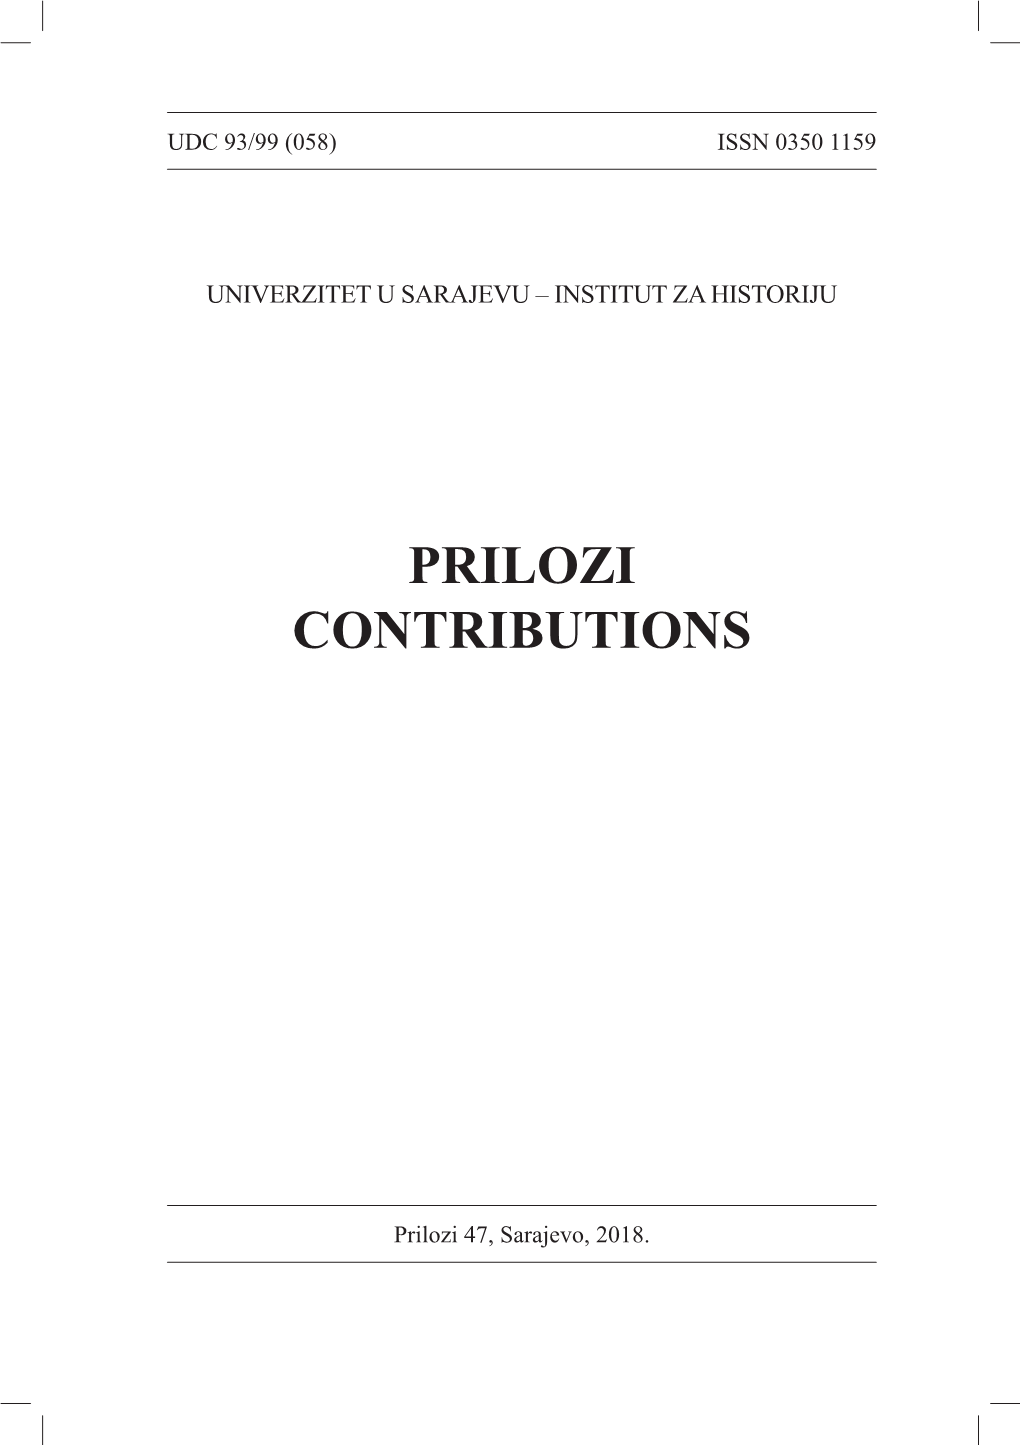 Prilozi Br. 47 (2018)